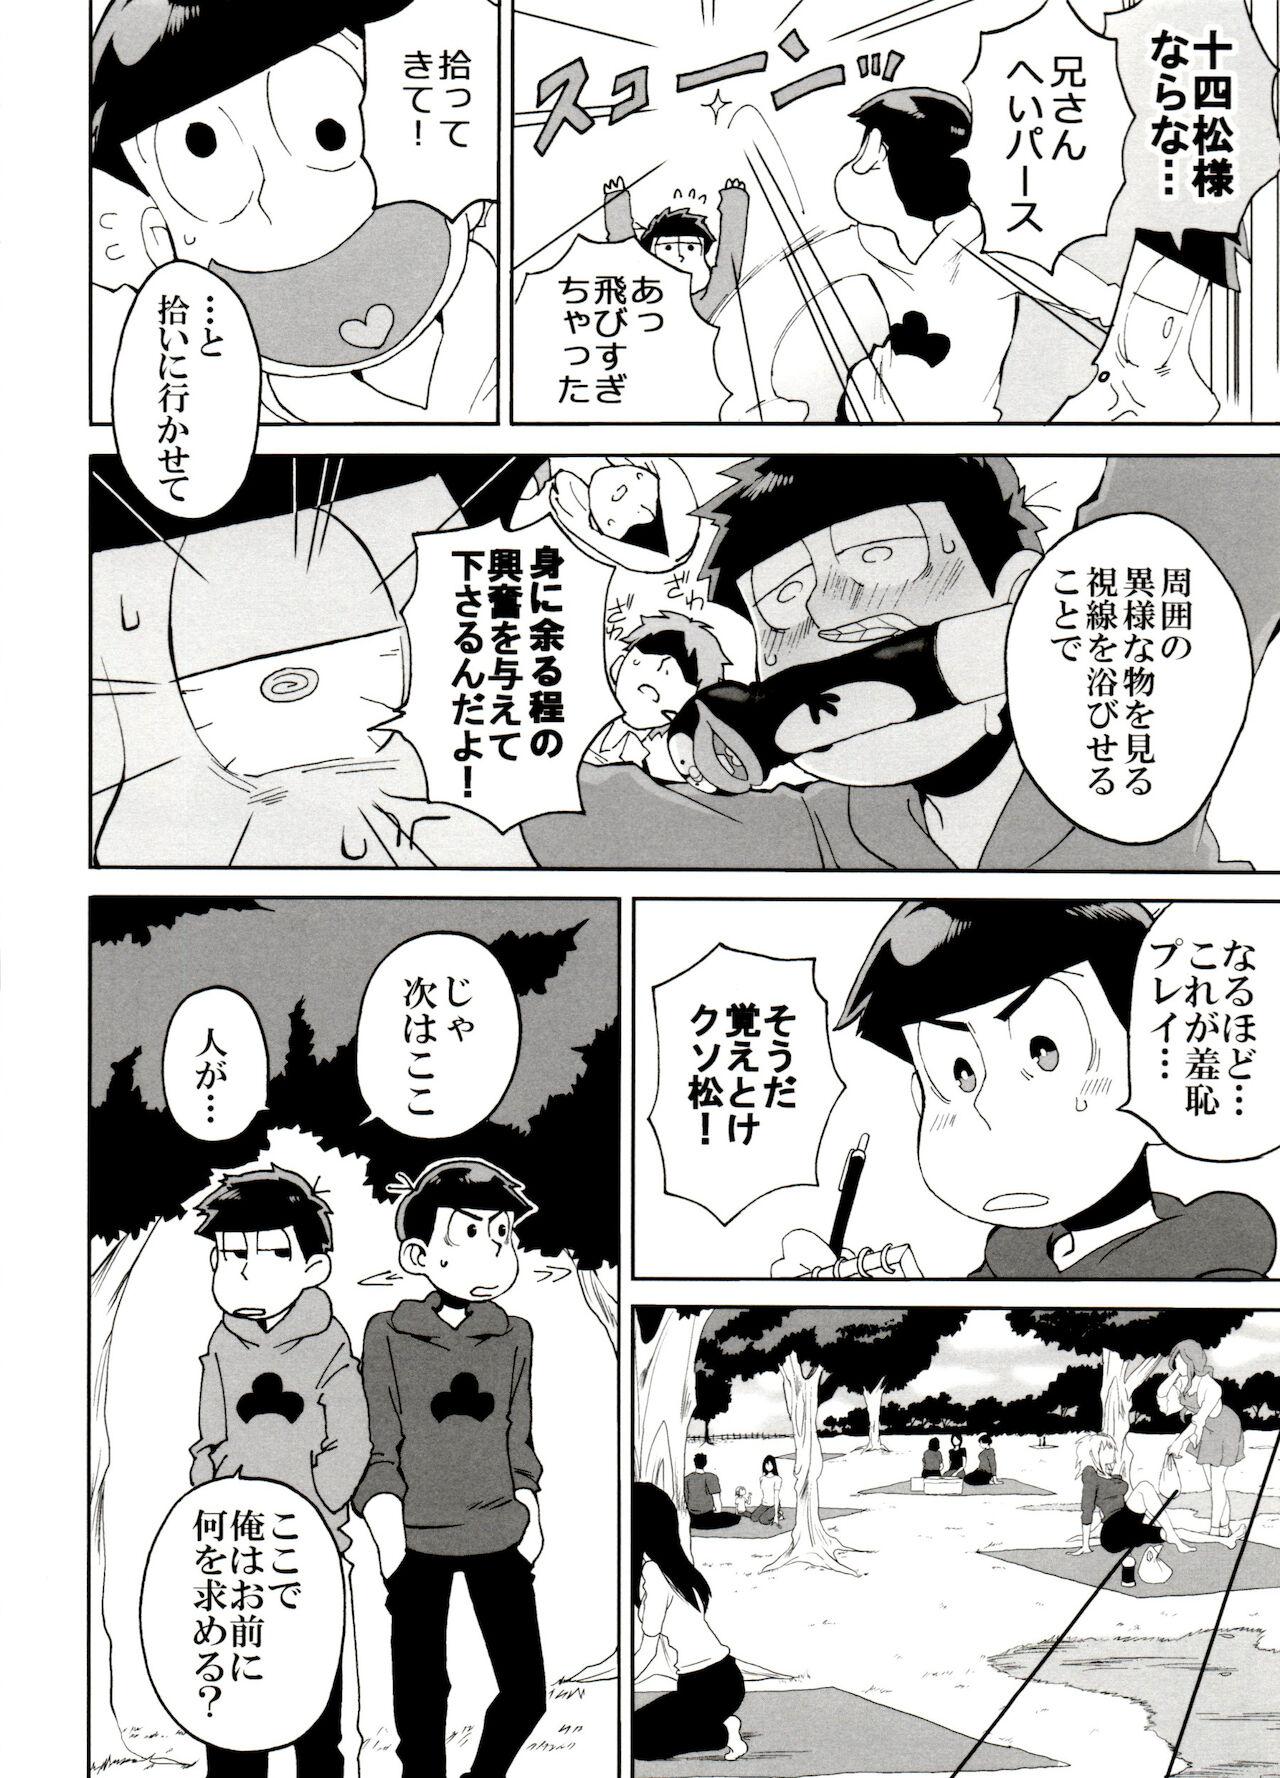 Couple Fucking SM Matsu 2 - Osomatsu san Leaked - Page 8